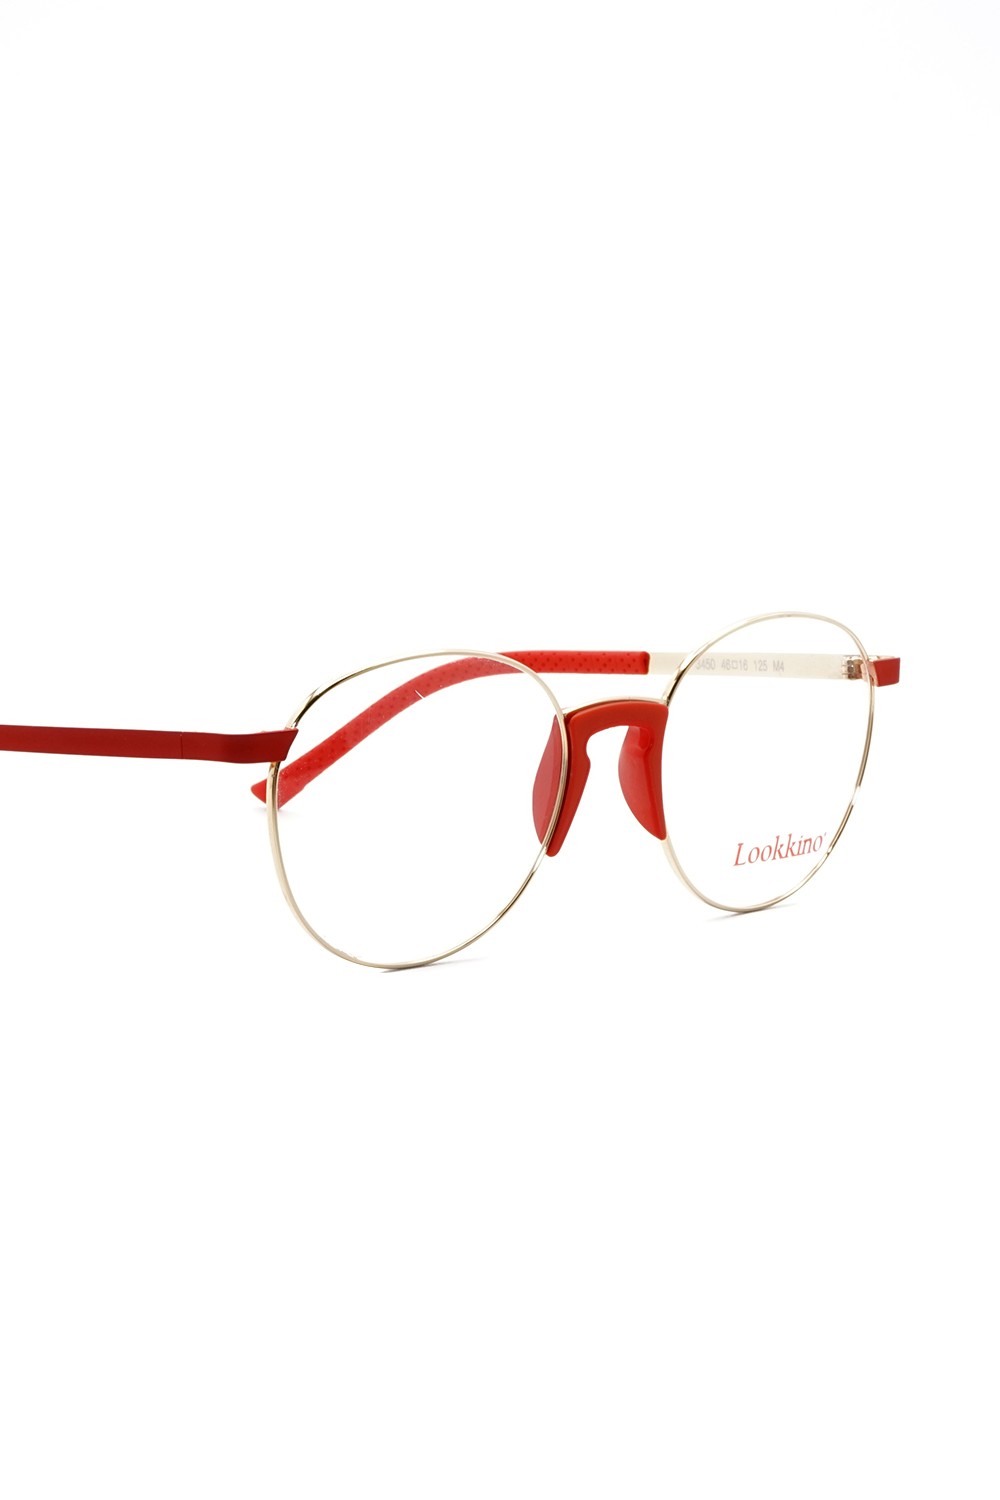 Lookkino - Occhiali da vista in metallo tondi per bambini rosso